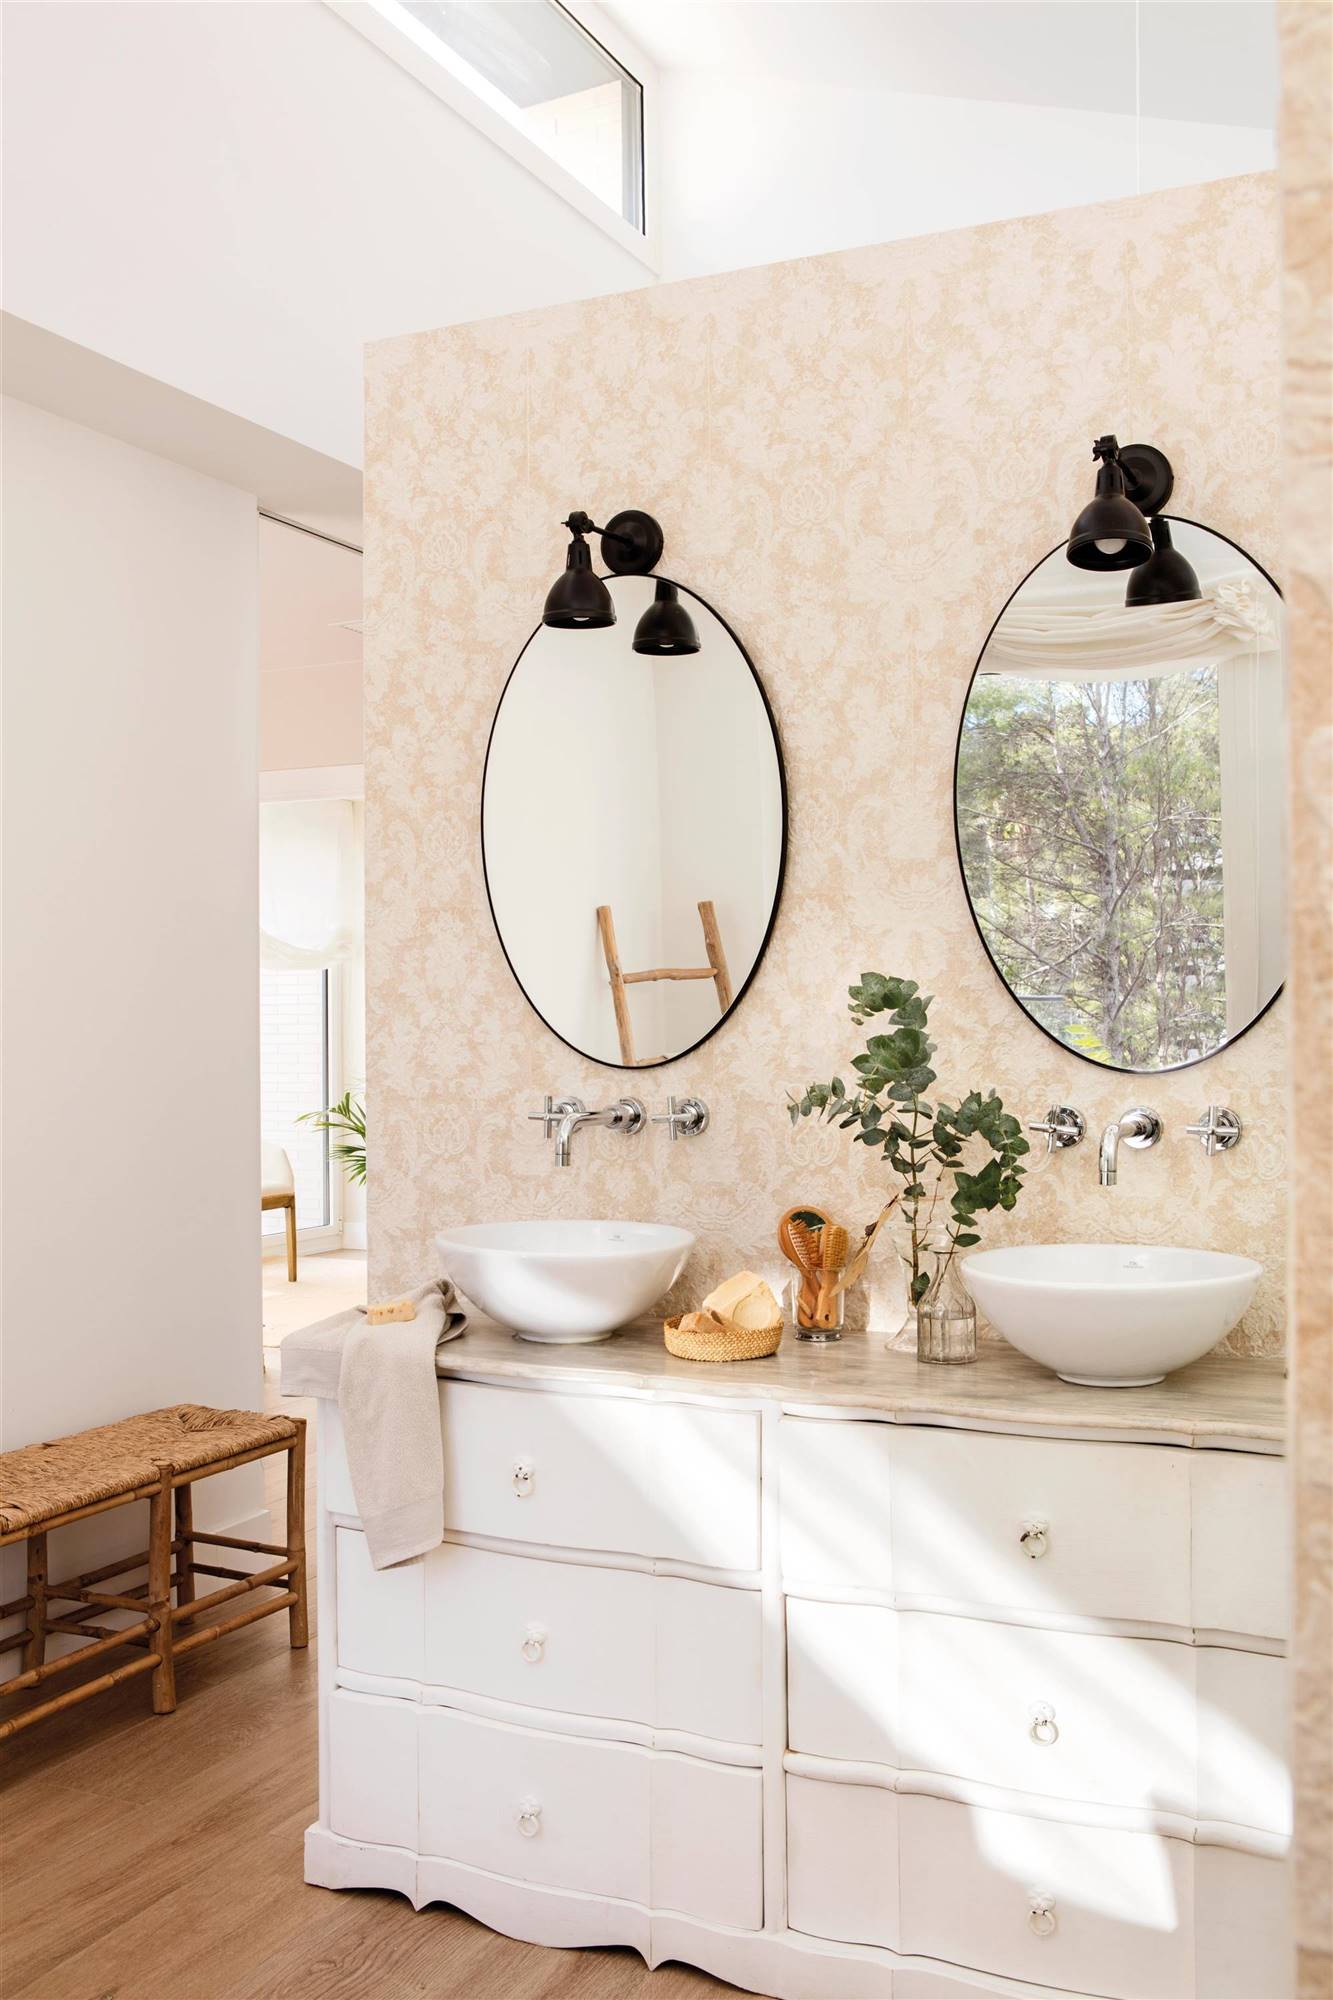 Baño clásico con dos espejos negros redondos y cómoda restaurada. 